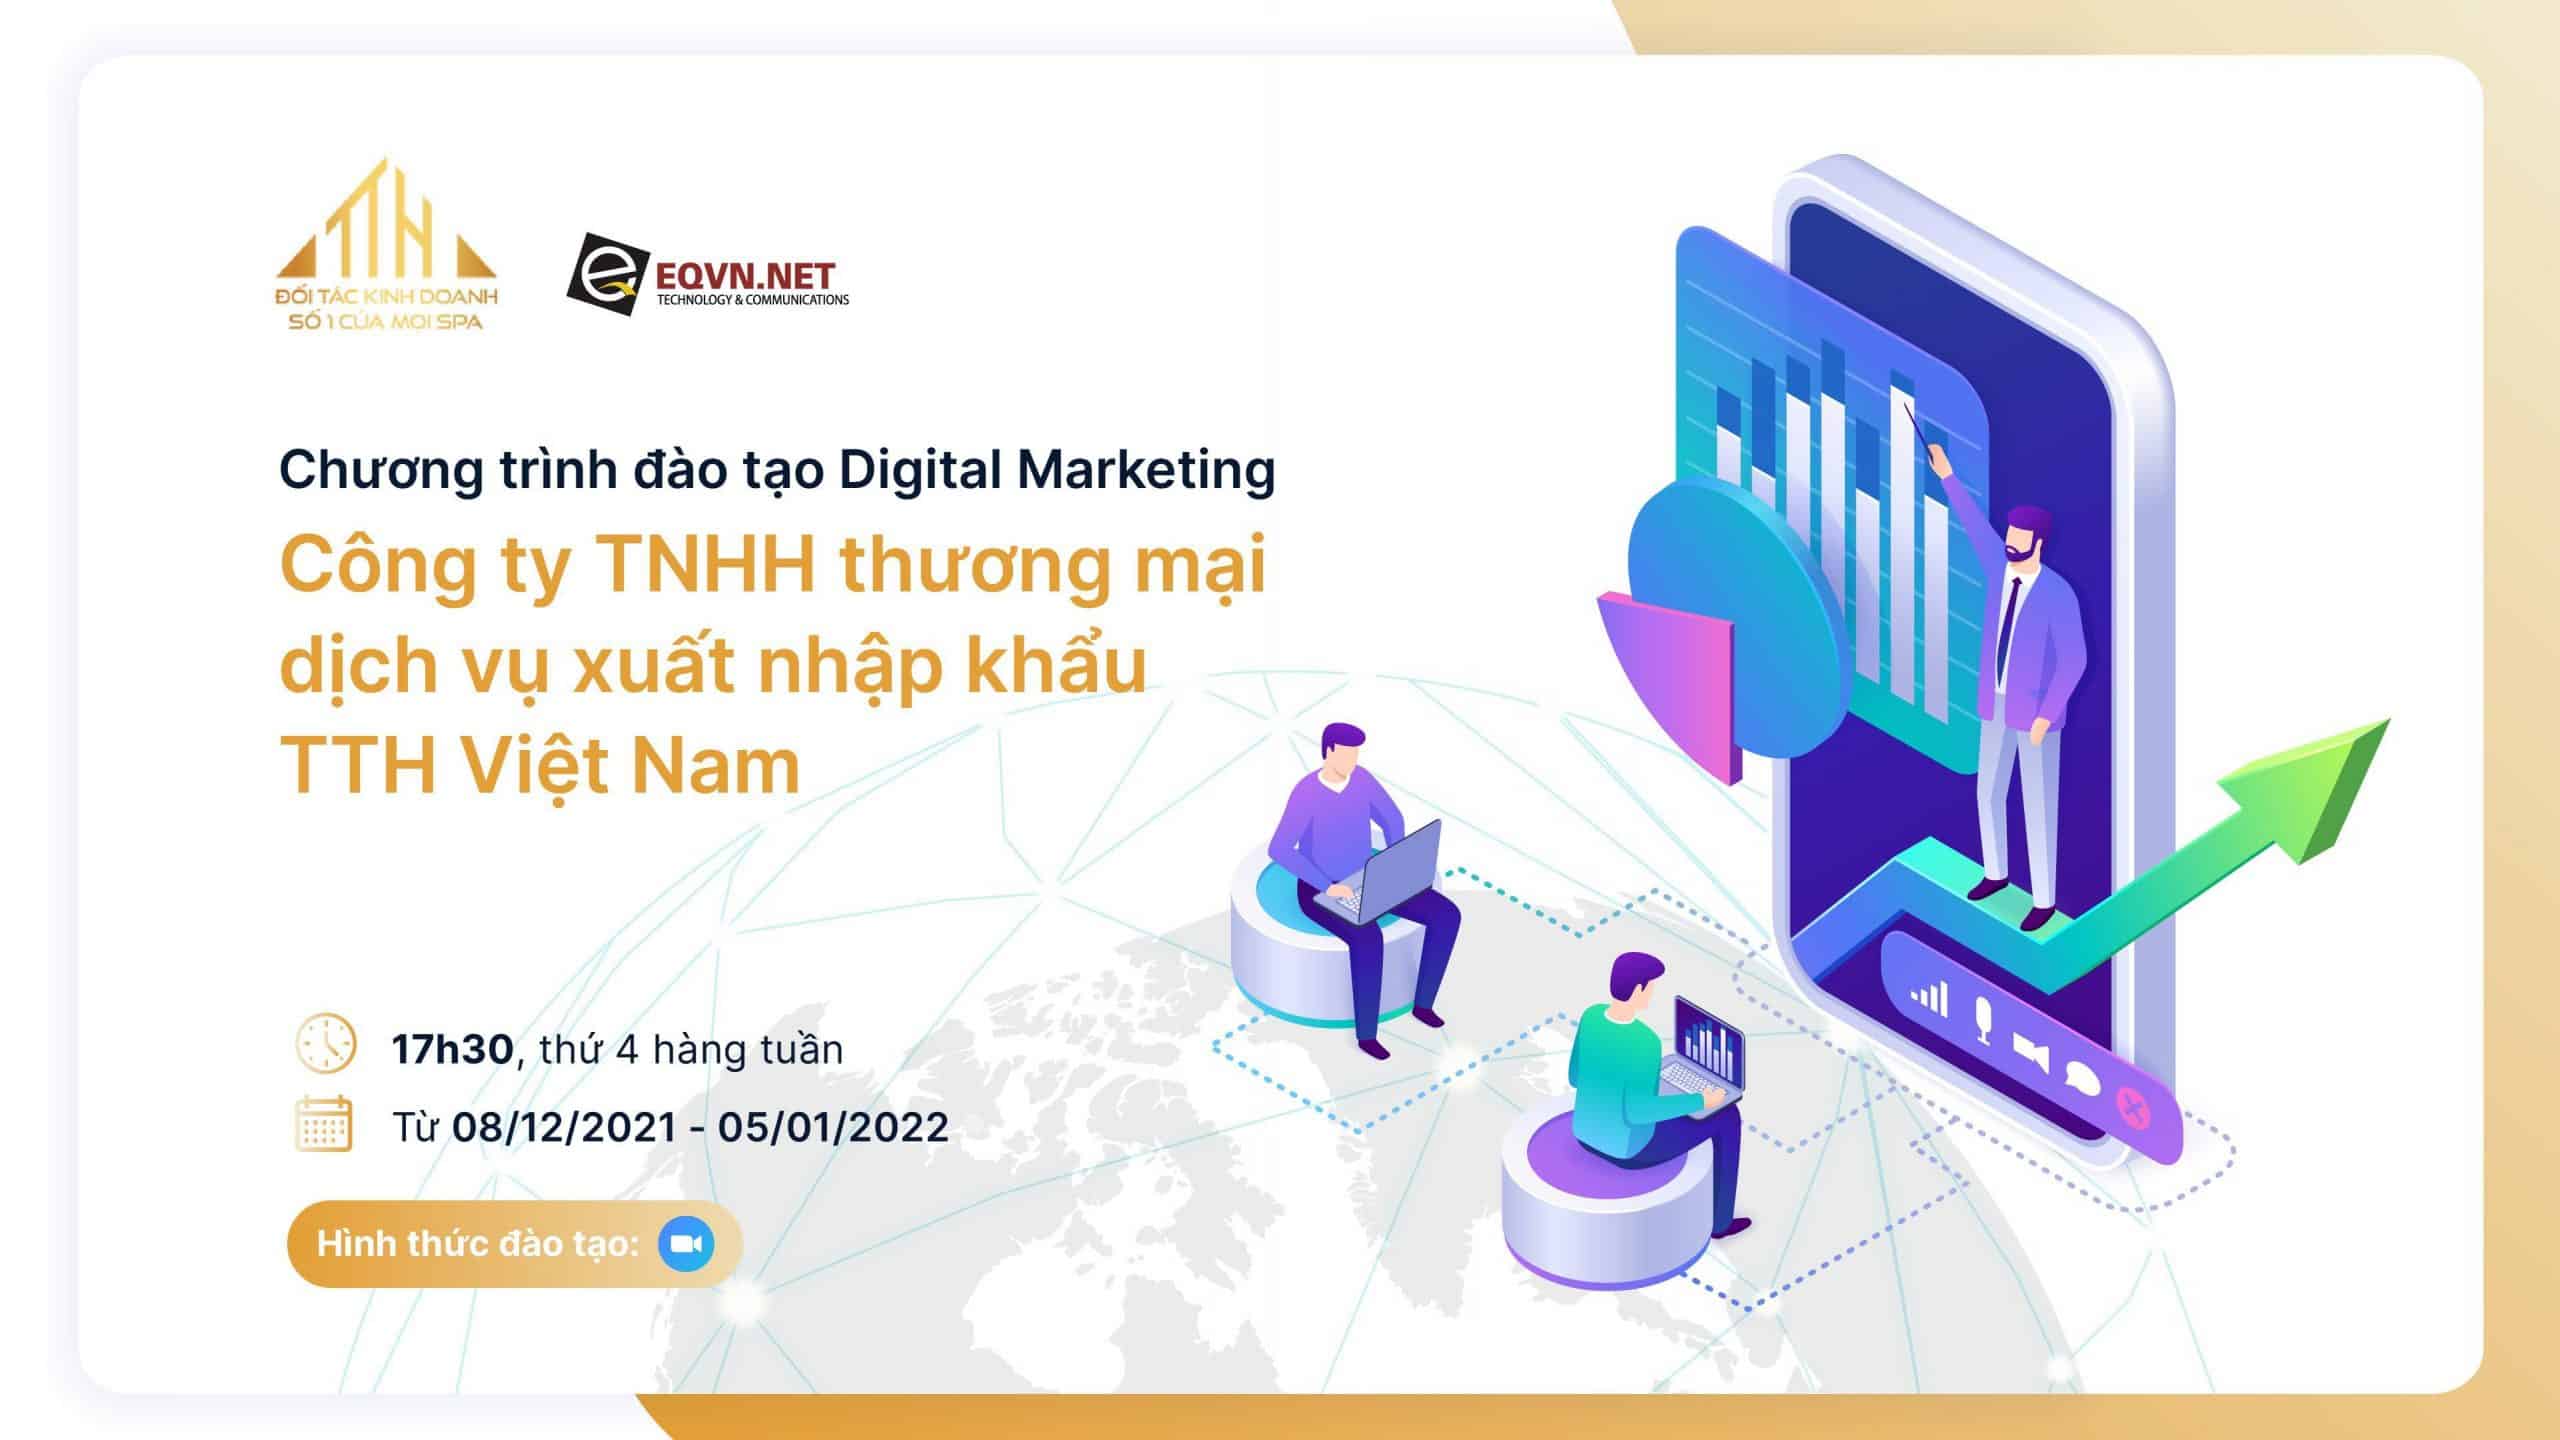 EQVN đào tạo Digital Marketing trực tiếp cho công ty TTH Việt Nam